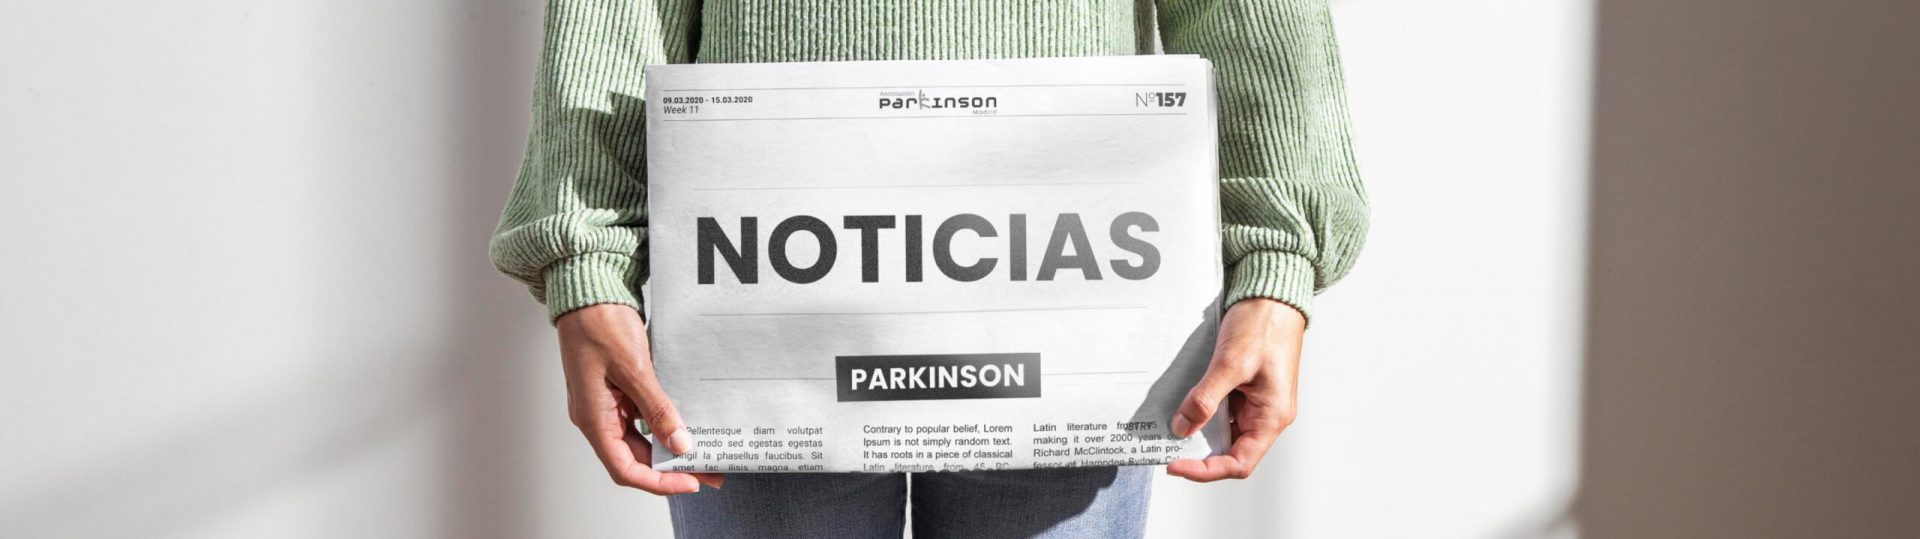 Noticias sobre párkinson